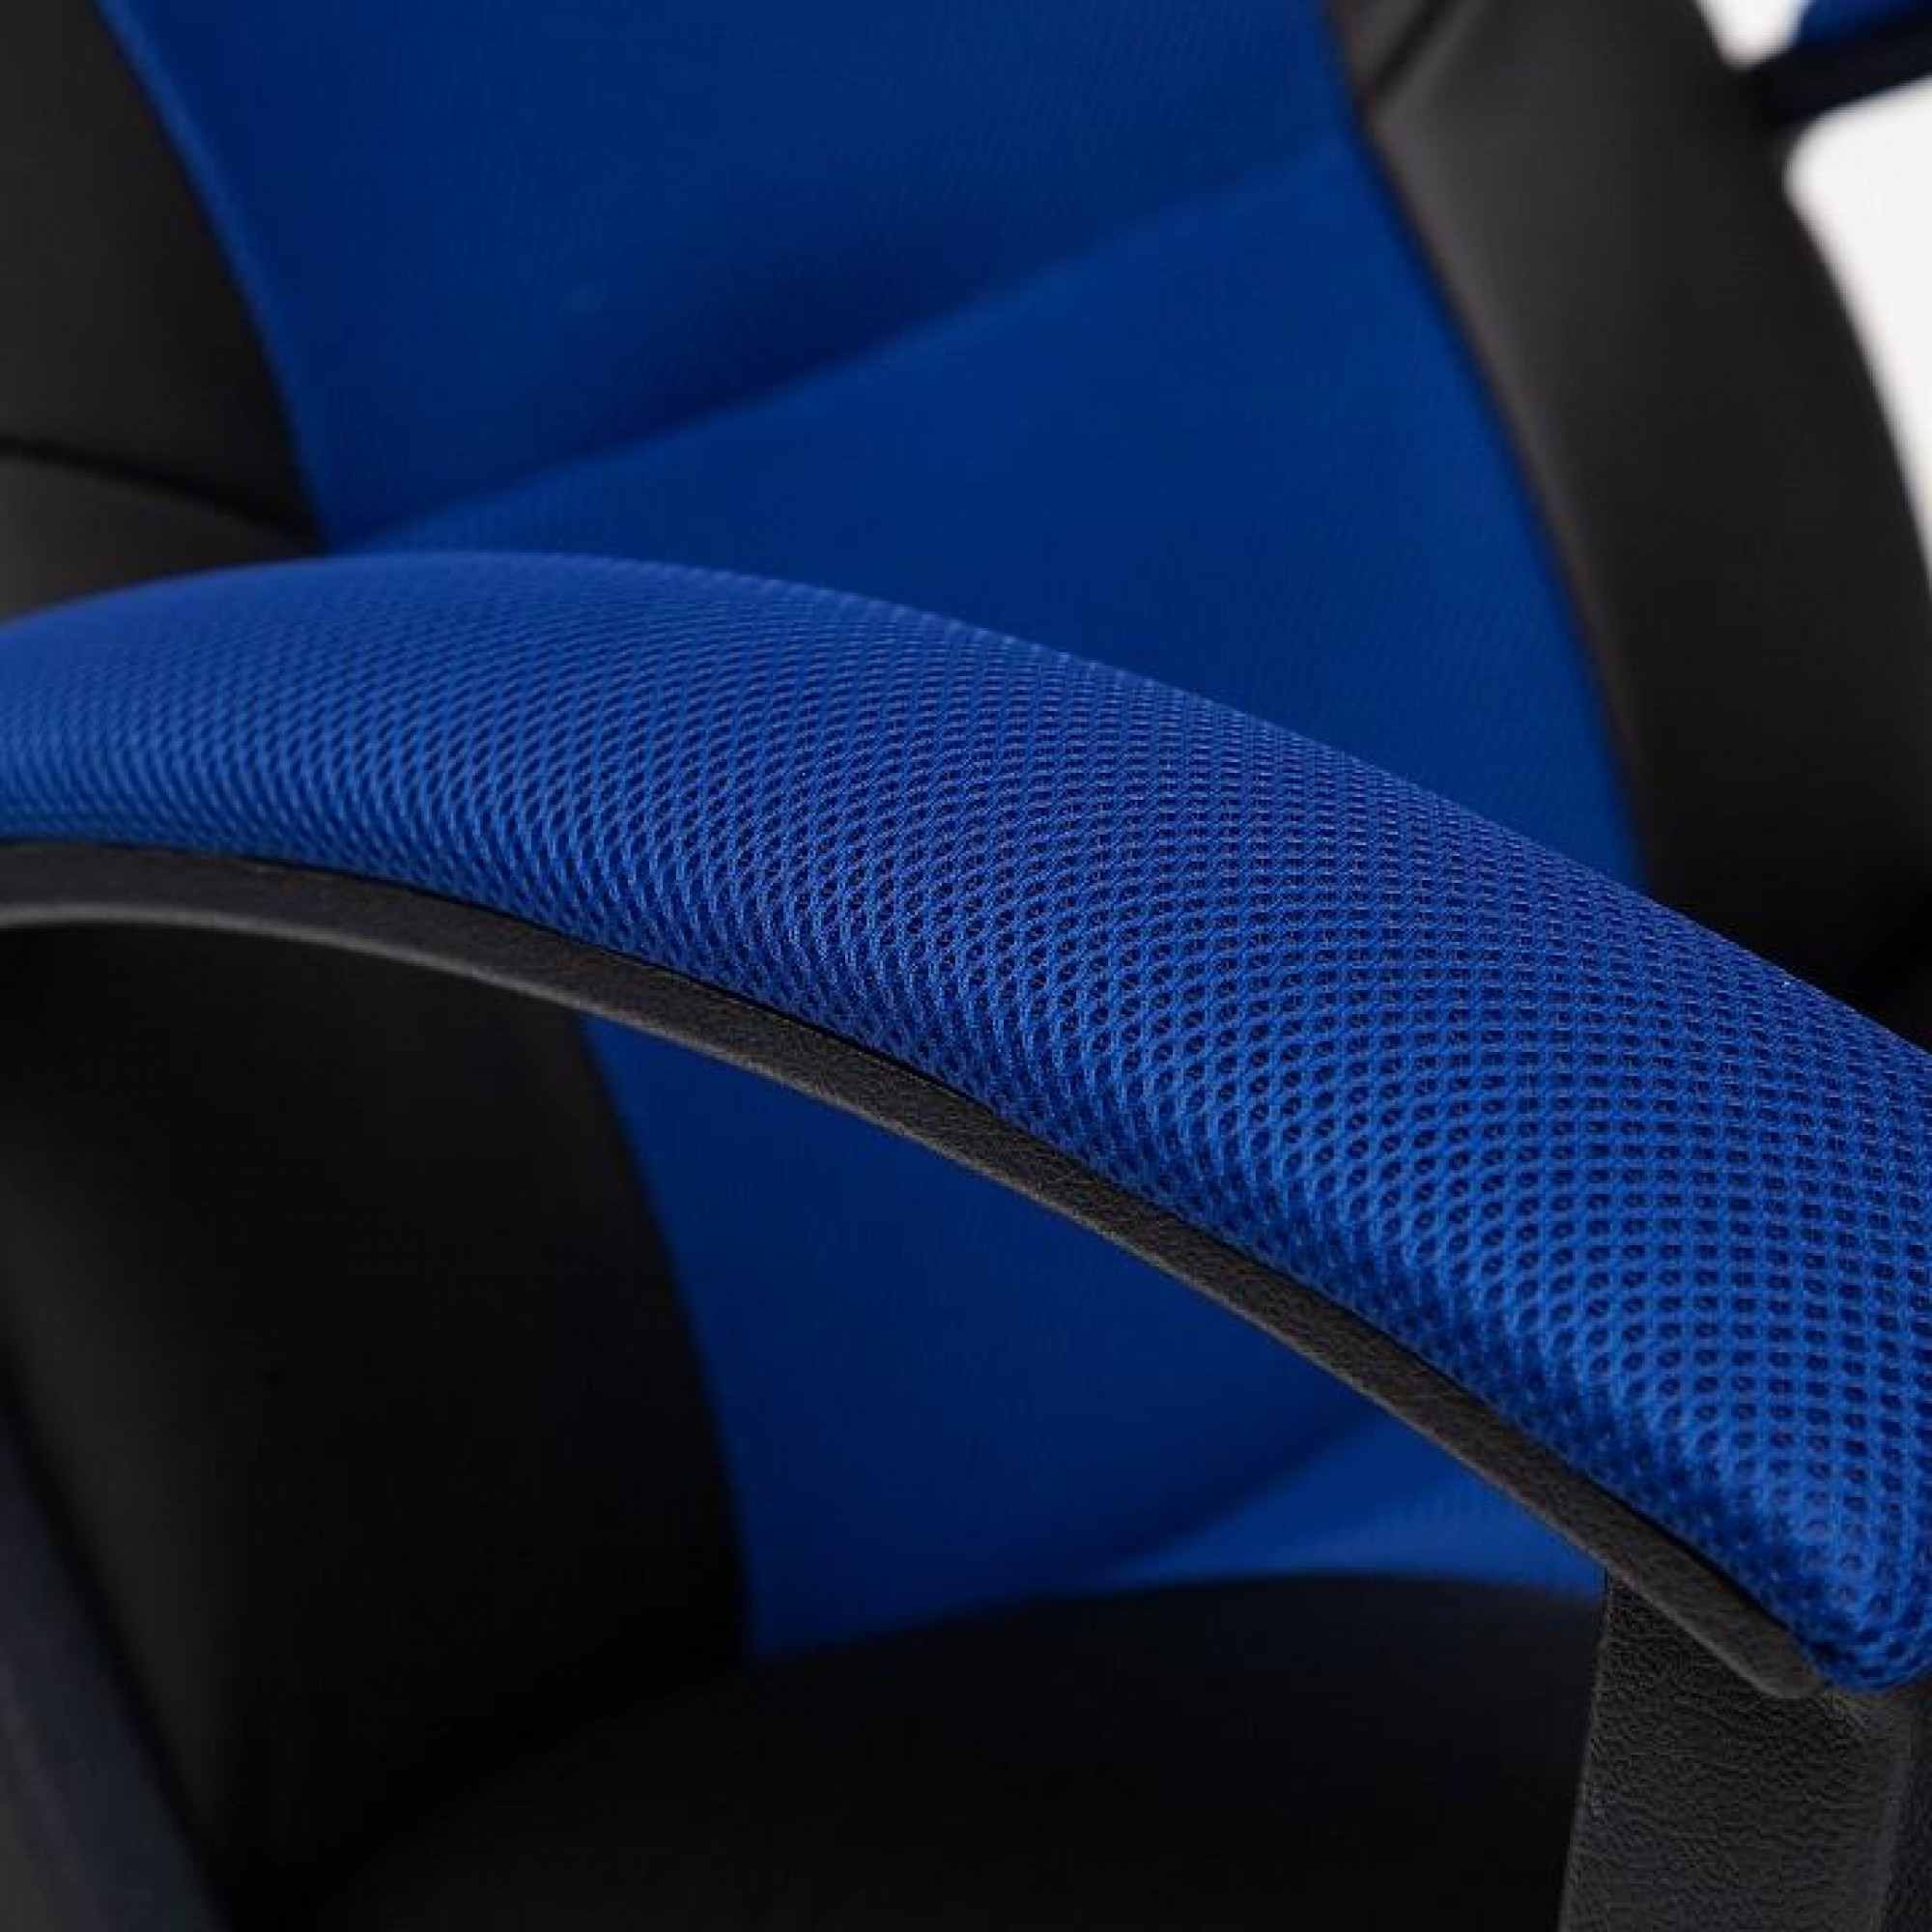 Кресло компьютерное Driver синий 550x490x1260-1350(TET_10359)